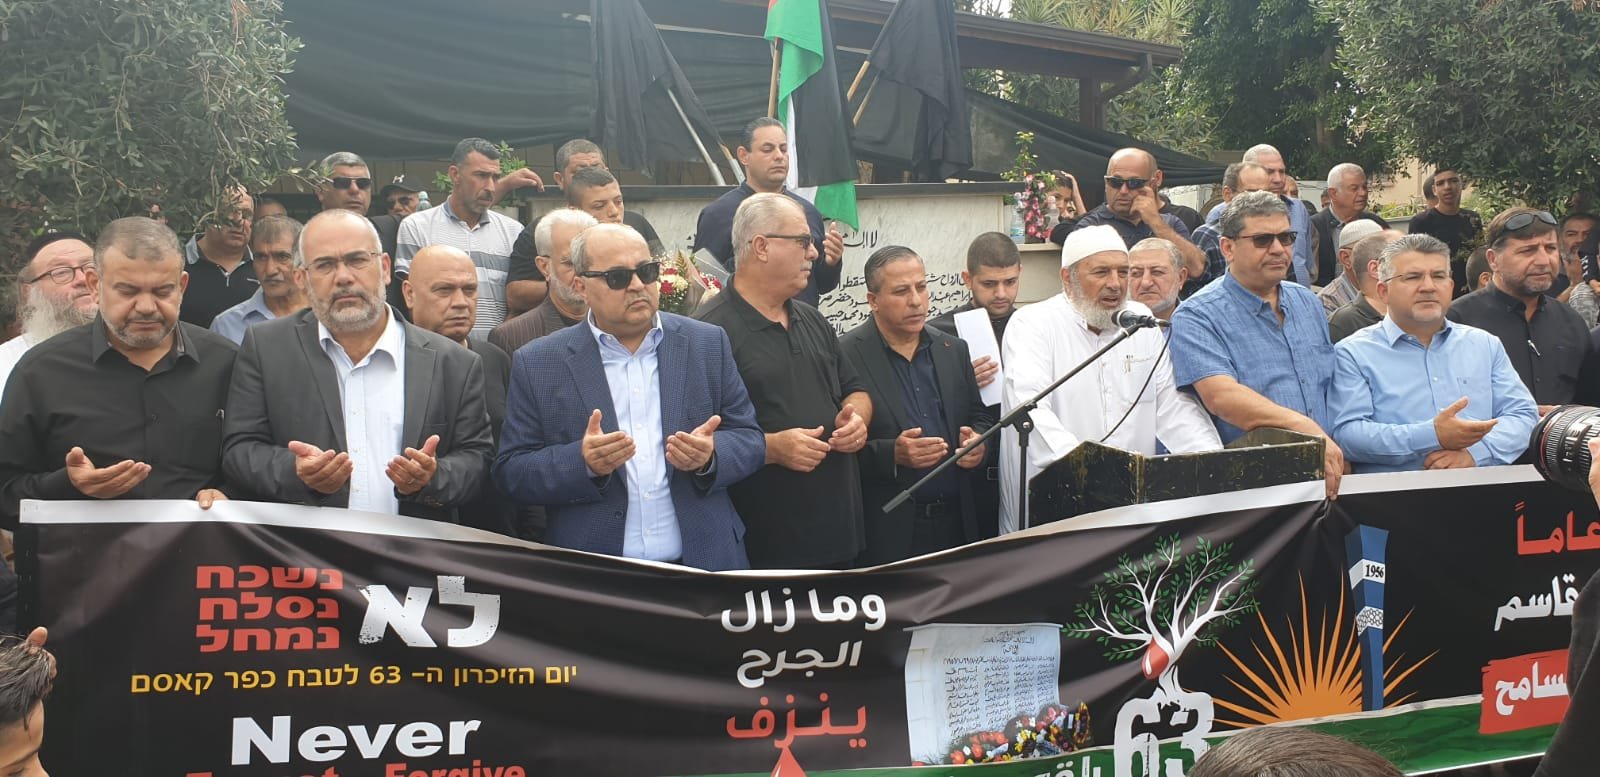 الجماهير تُحيي الذكرى الـ 63 لمجزرة كفر قاسم، ويحملون شعارات منددة ضد العنف-4